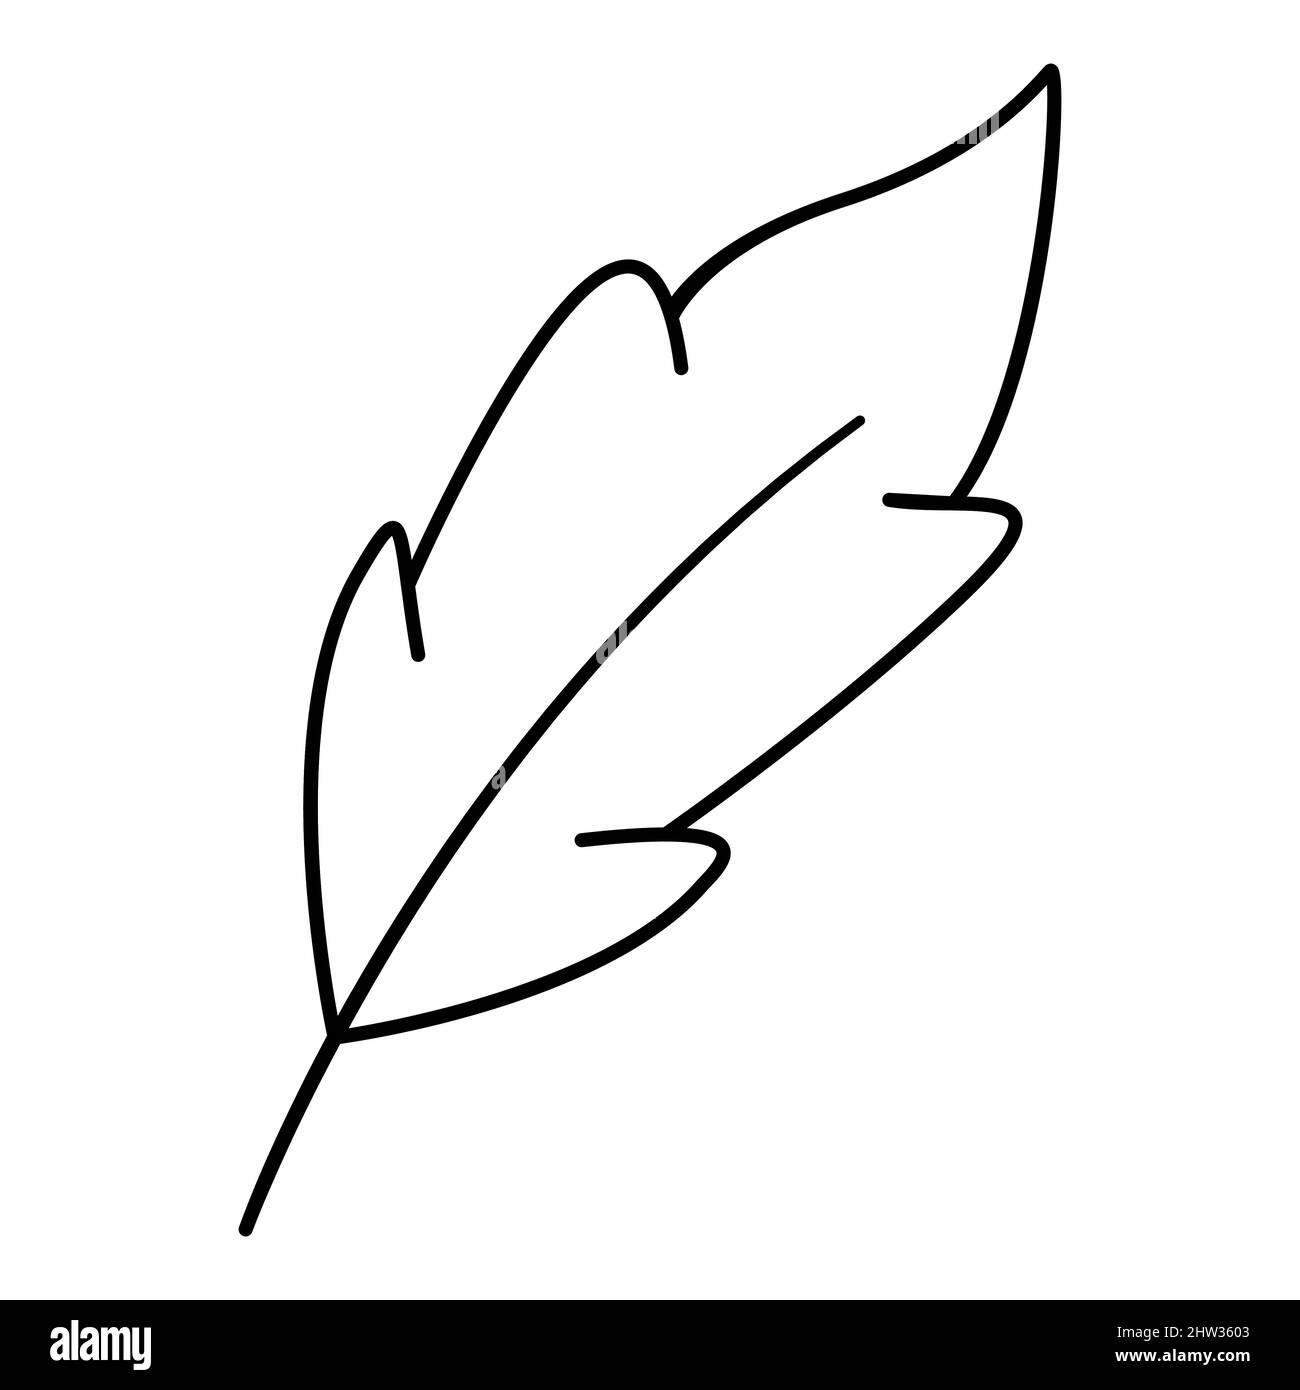 Pluma y tinta de dibujo de aves fotografías e imágenes de alta resolución -  Alamy